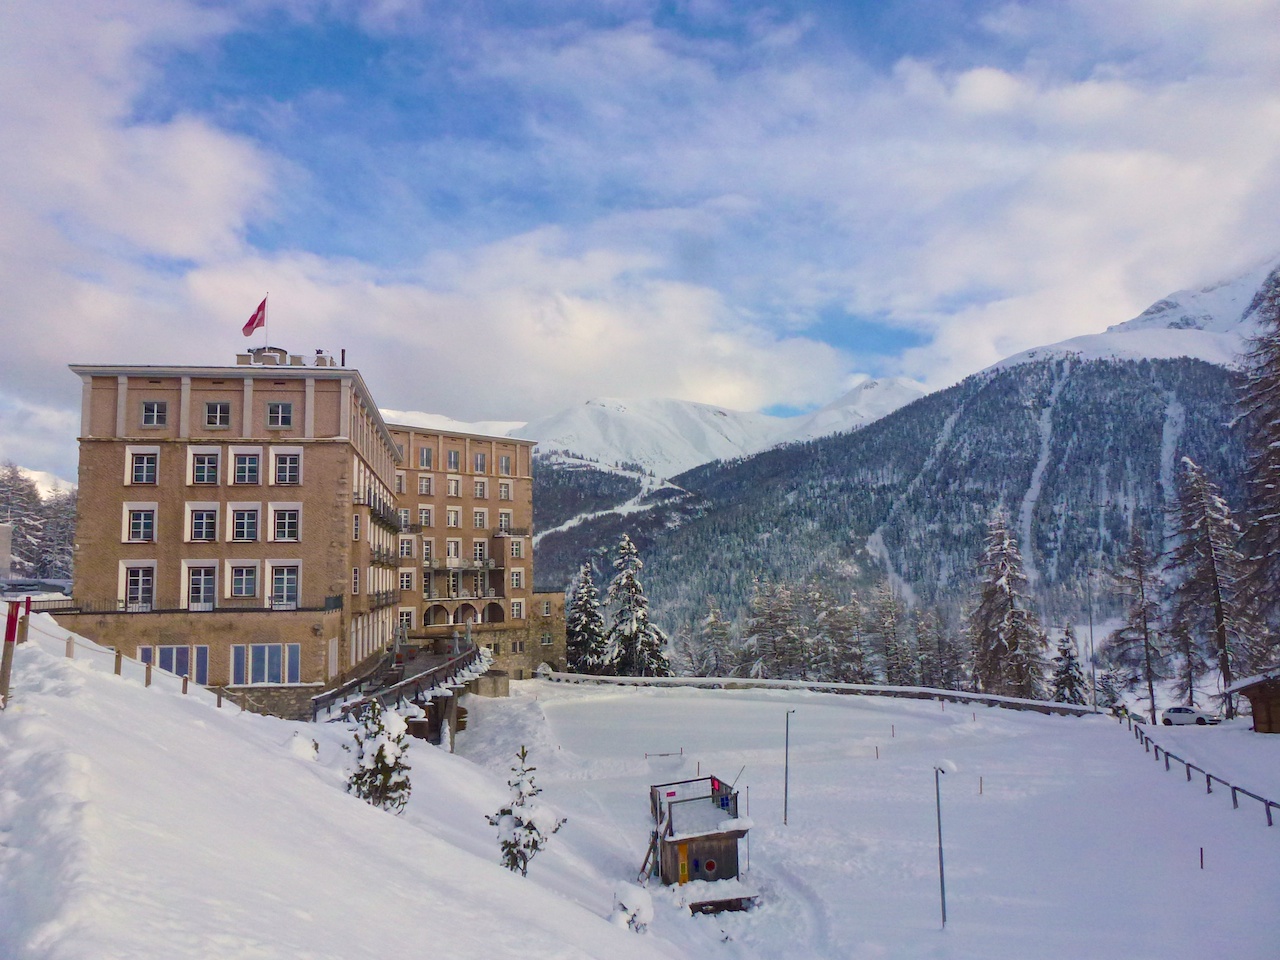 Das Hotel Castell in Zuoz: Mächtig und doch liebevoll eingebettet in die Natur.